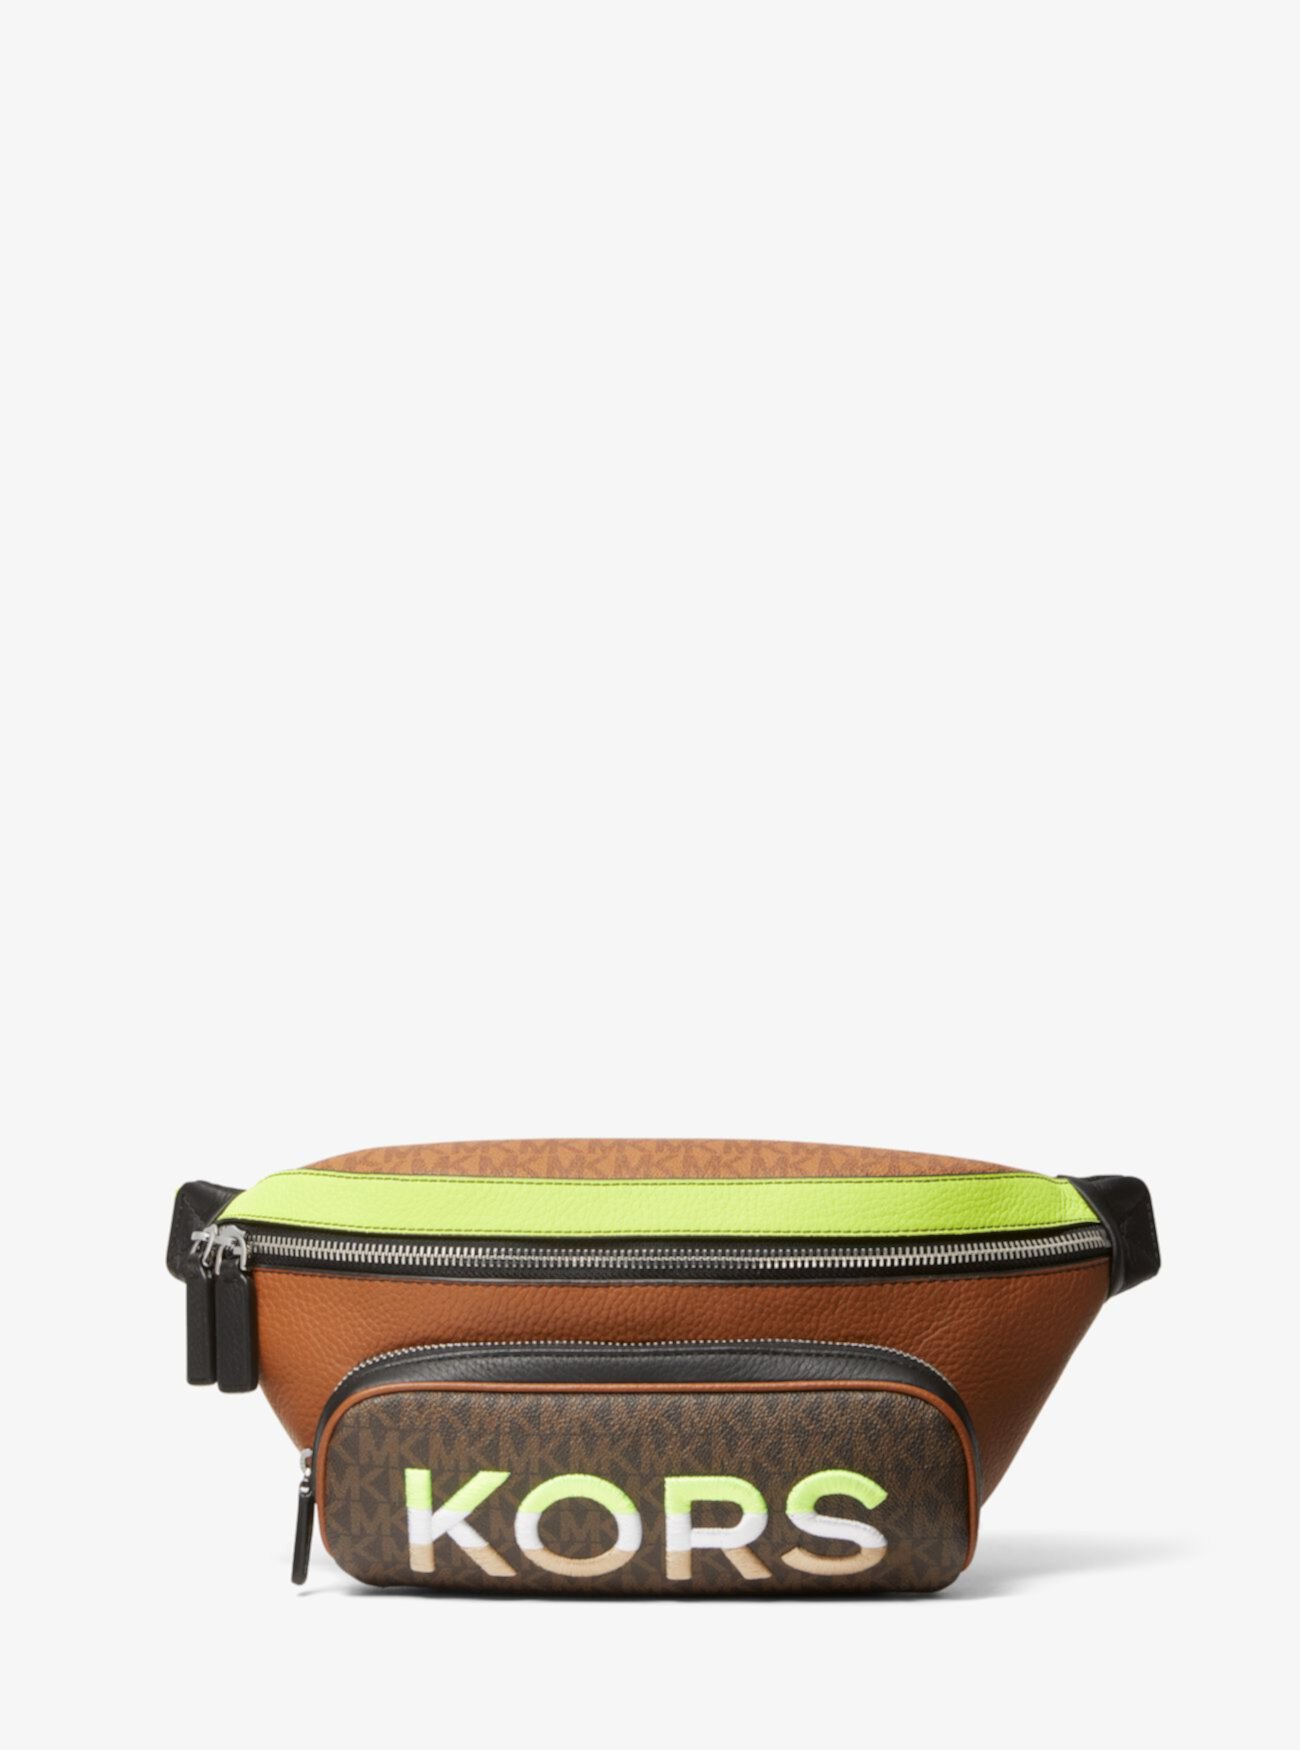 Двухцветная поясная сумка Cooper с вышитым логотипом и кожаной поясной сумкой Michael Kors